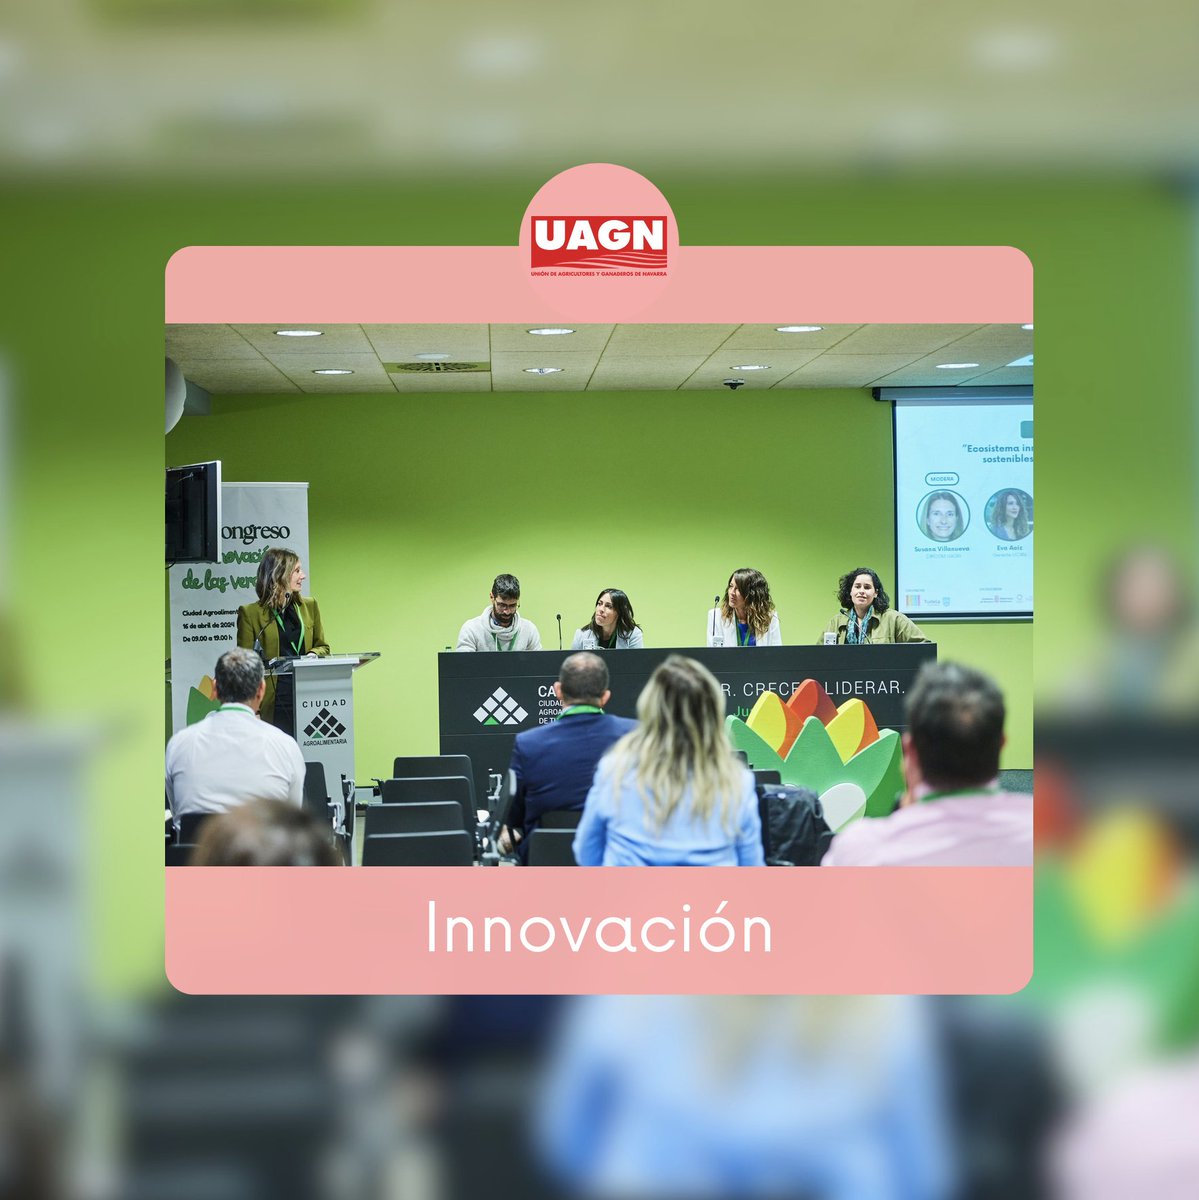 🔎🥬 #UAGN analiza la #innovación del #sectoragroalimentario en el VII #Congreso de la #Verdura de #Tudela 👉 Temas: #relevogeneracional, #emprendimiento, #comunicaciónestratégica... #UAGNapuestaporlainnovación #UAGNalserviciodelagro 🆕 La crónica: uagn.es/jornada-verdur…